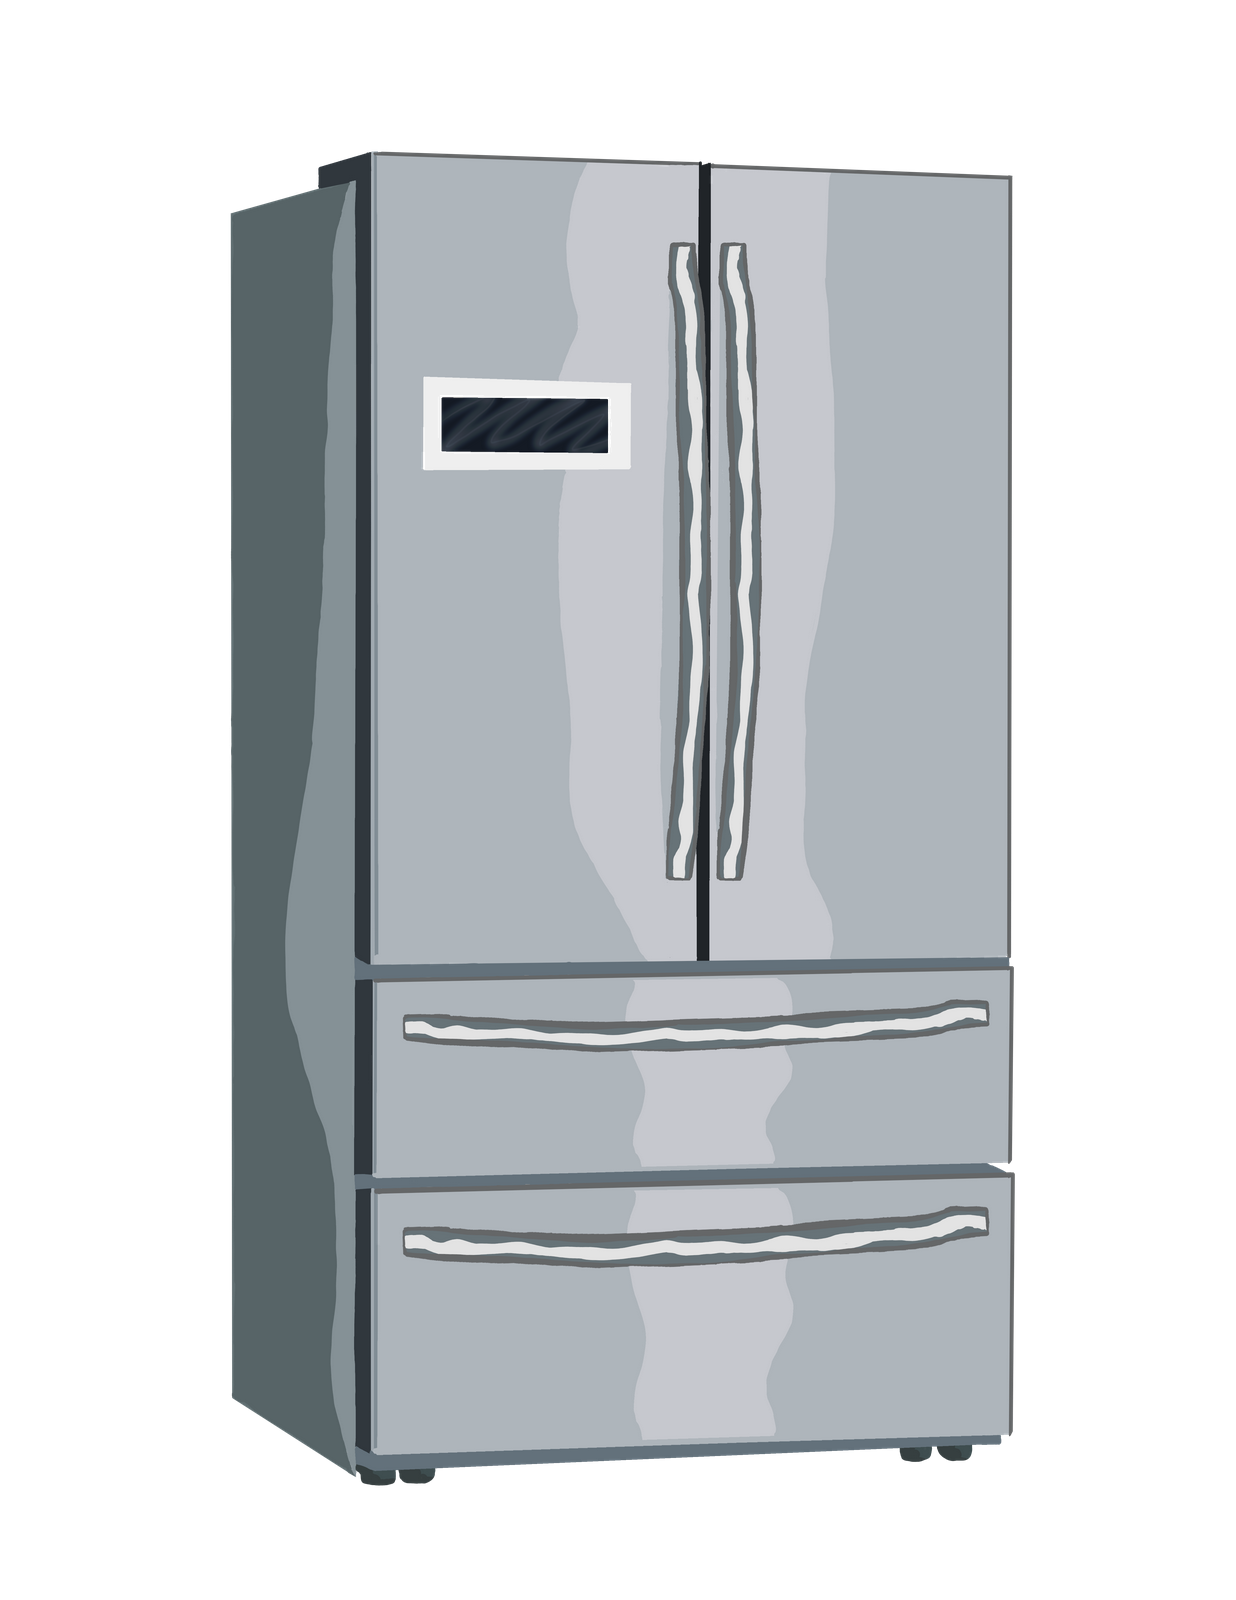 Samsung Refrigerator Repair In Montreal